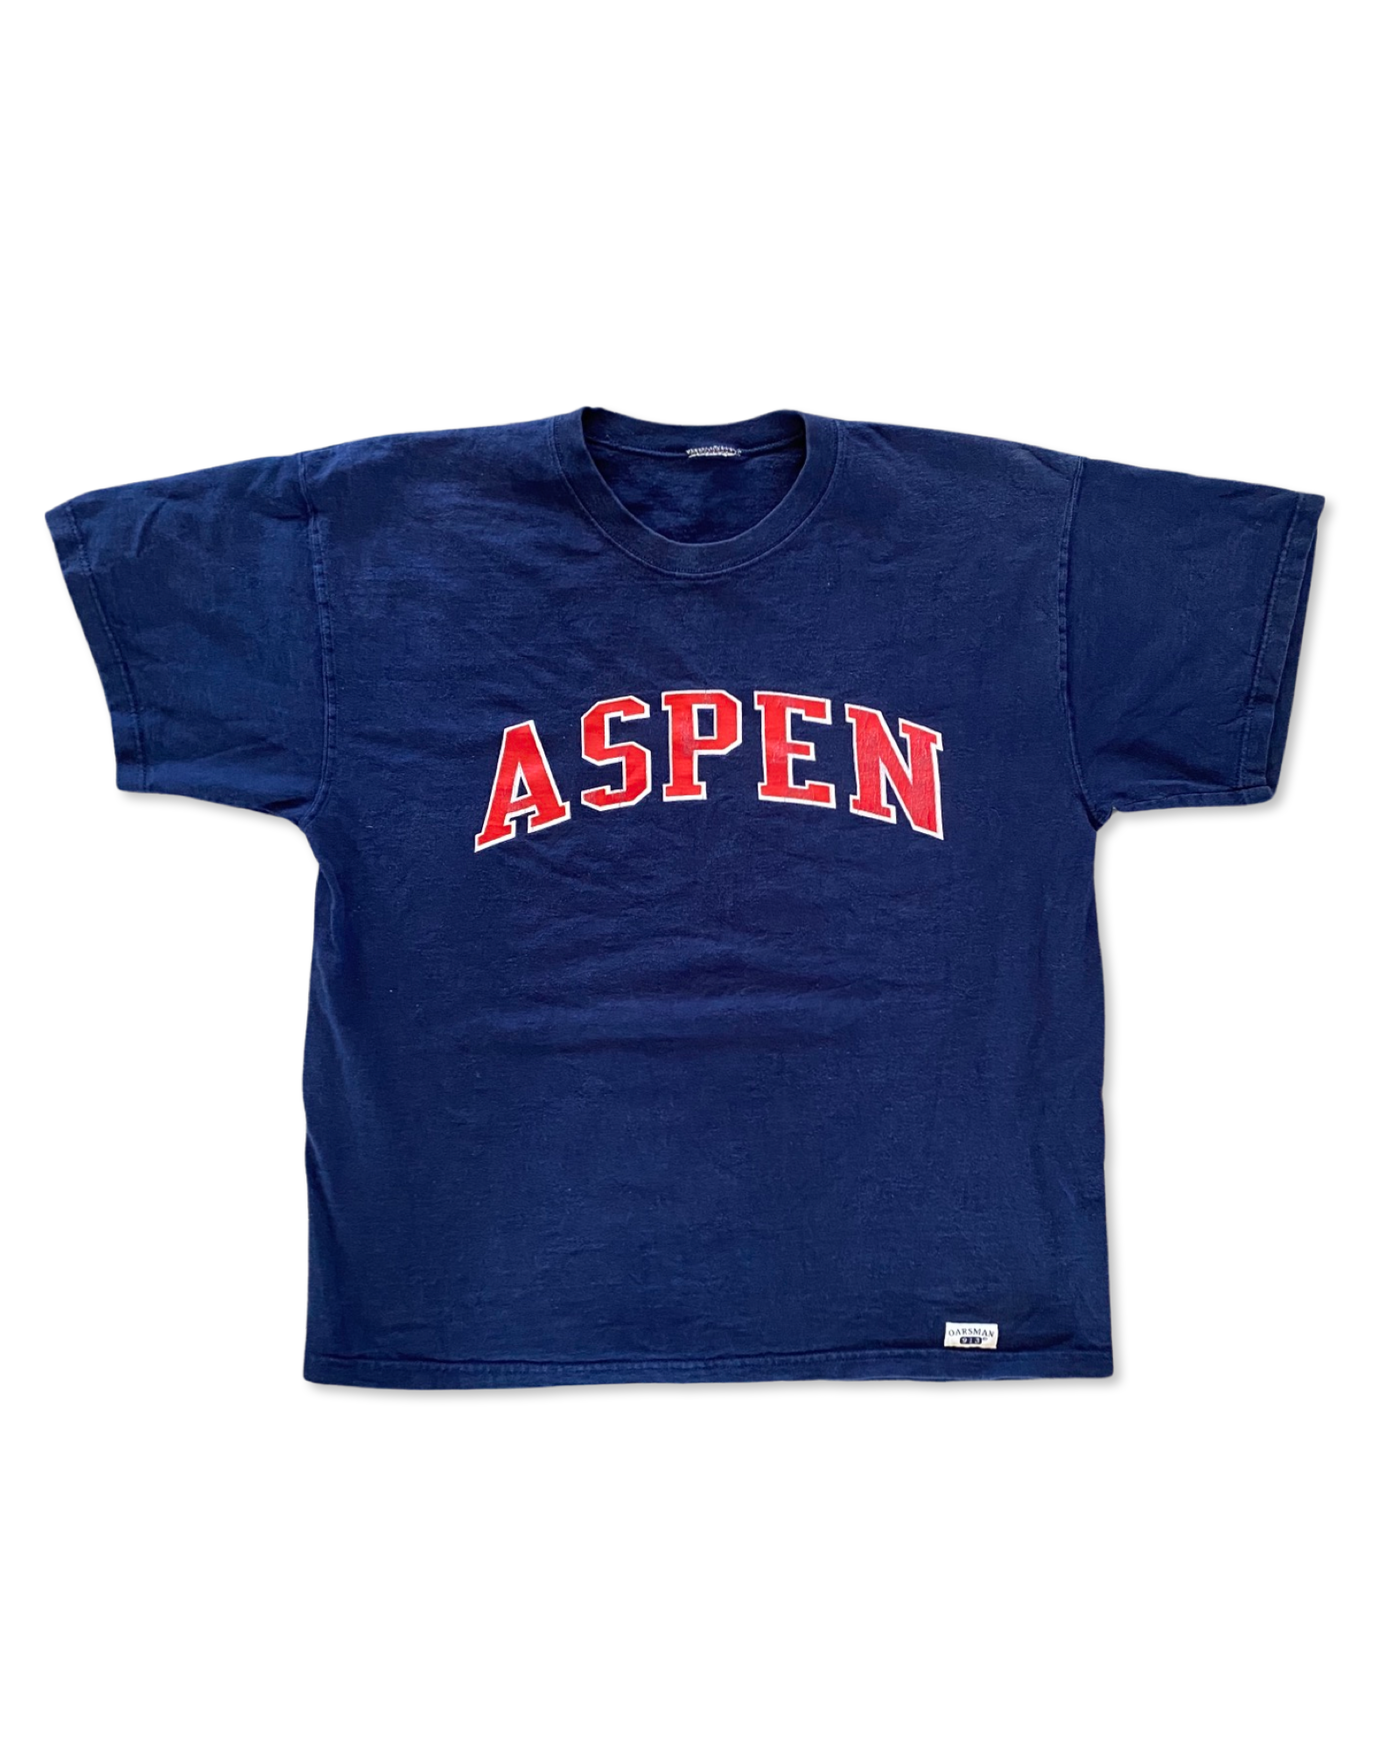 Vintage Aspen, CO Spellout T-Shirt